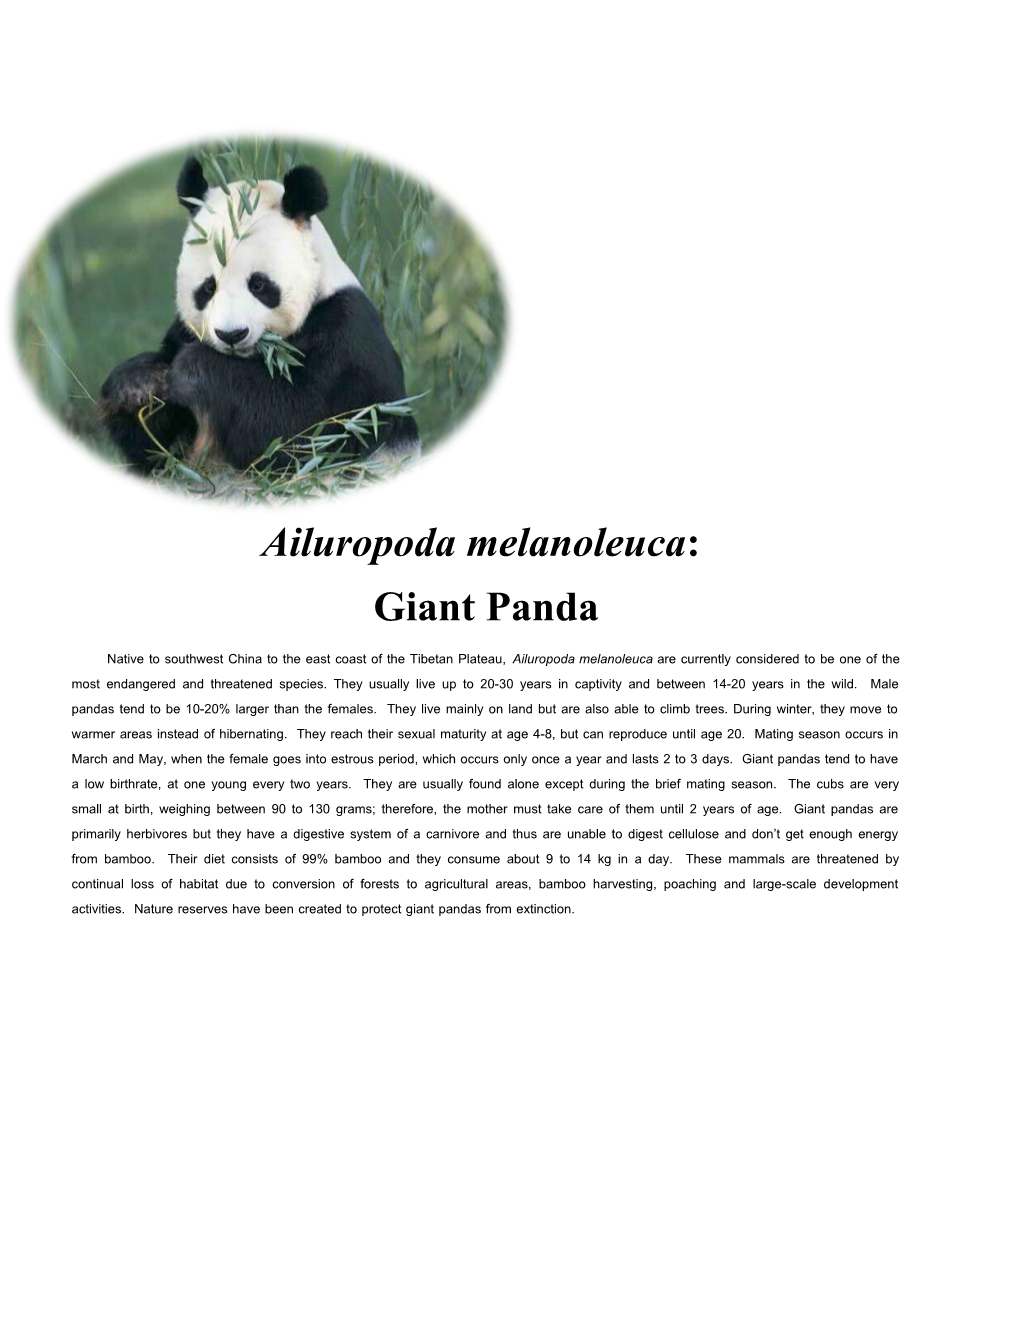 Ailuropoda Melanoleuca (Giant Panda)